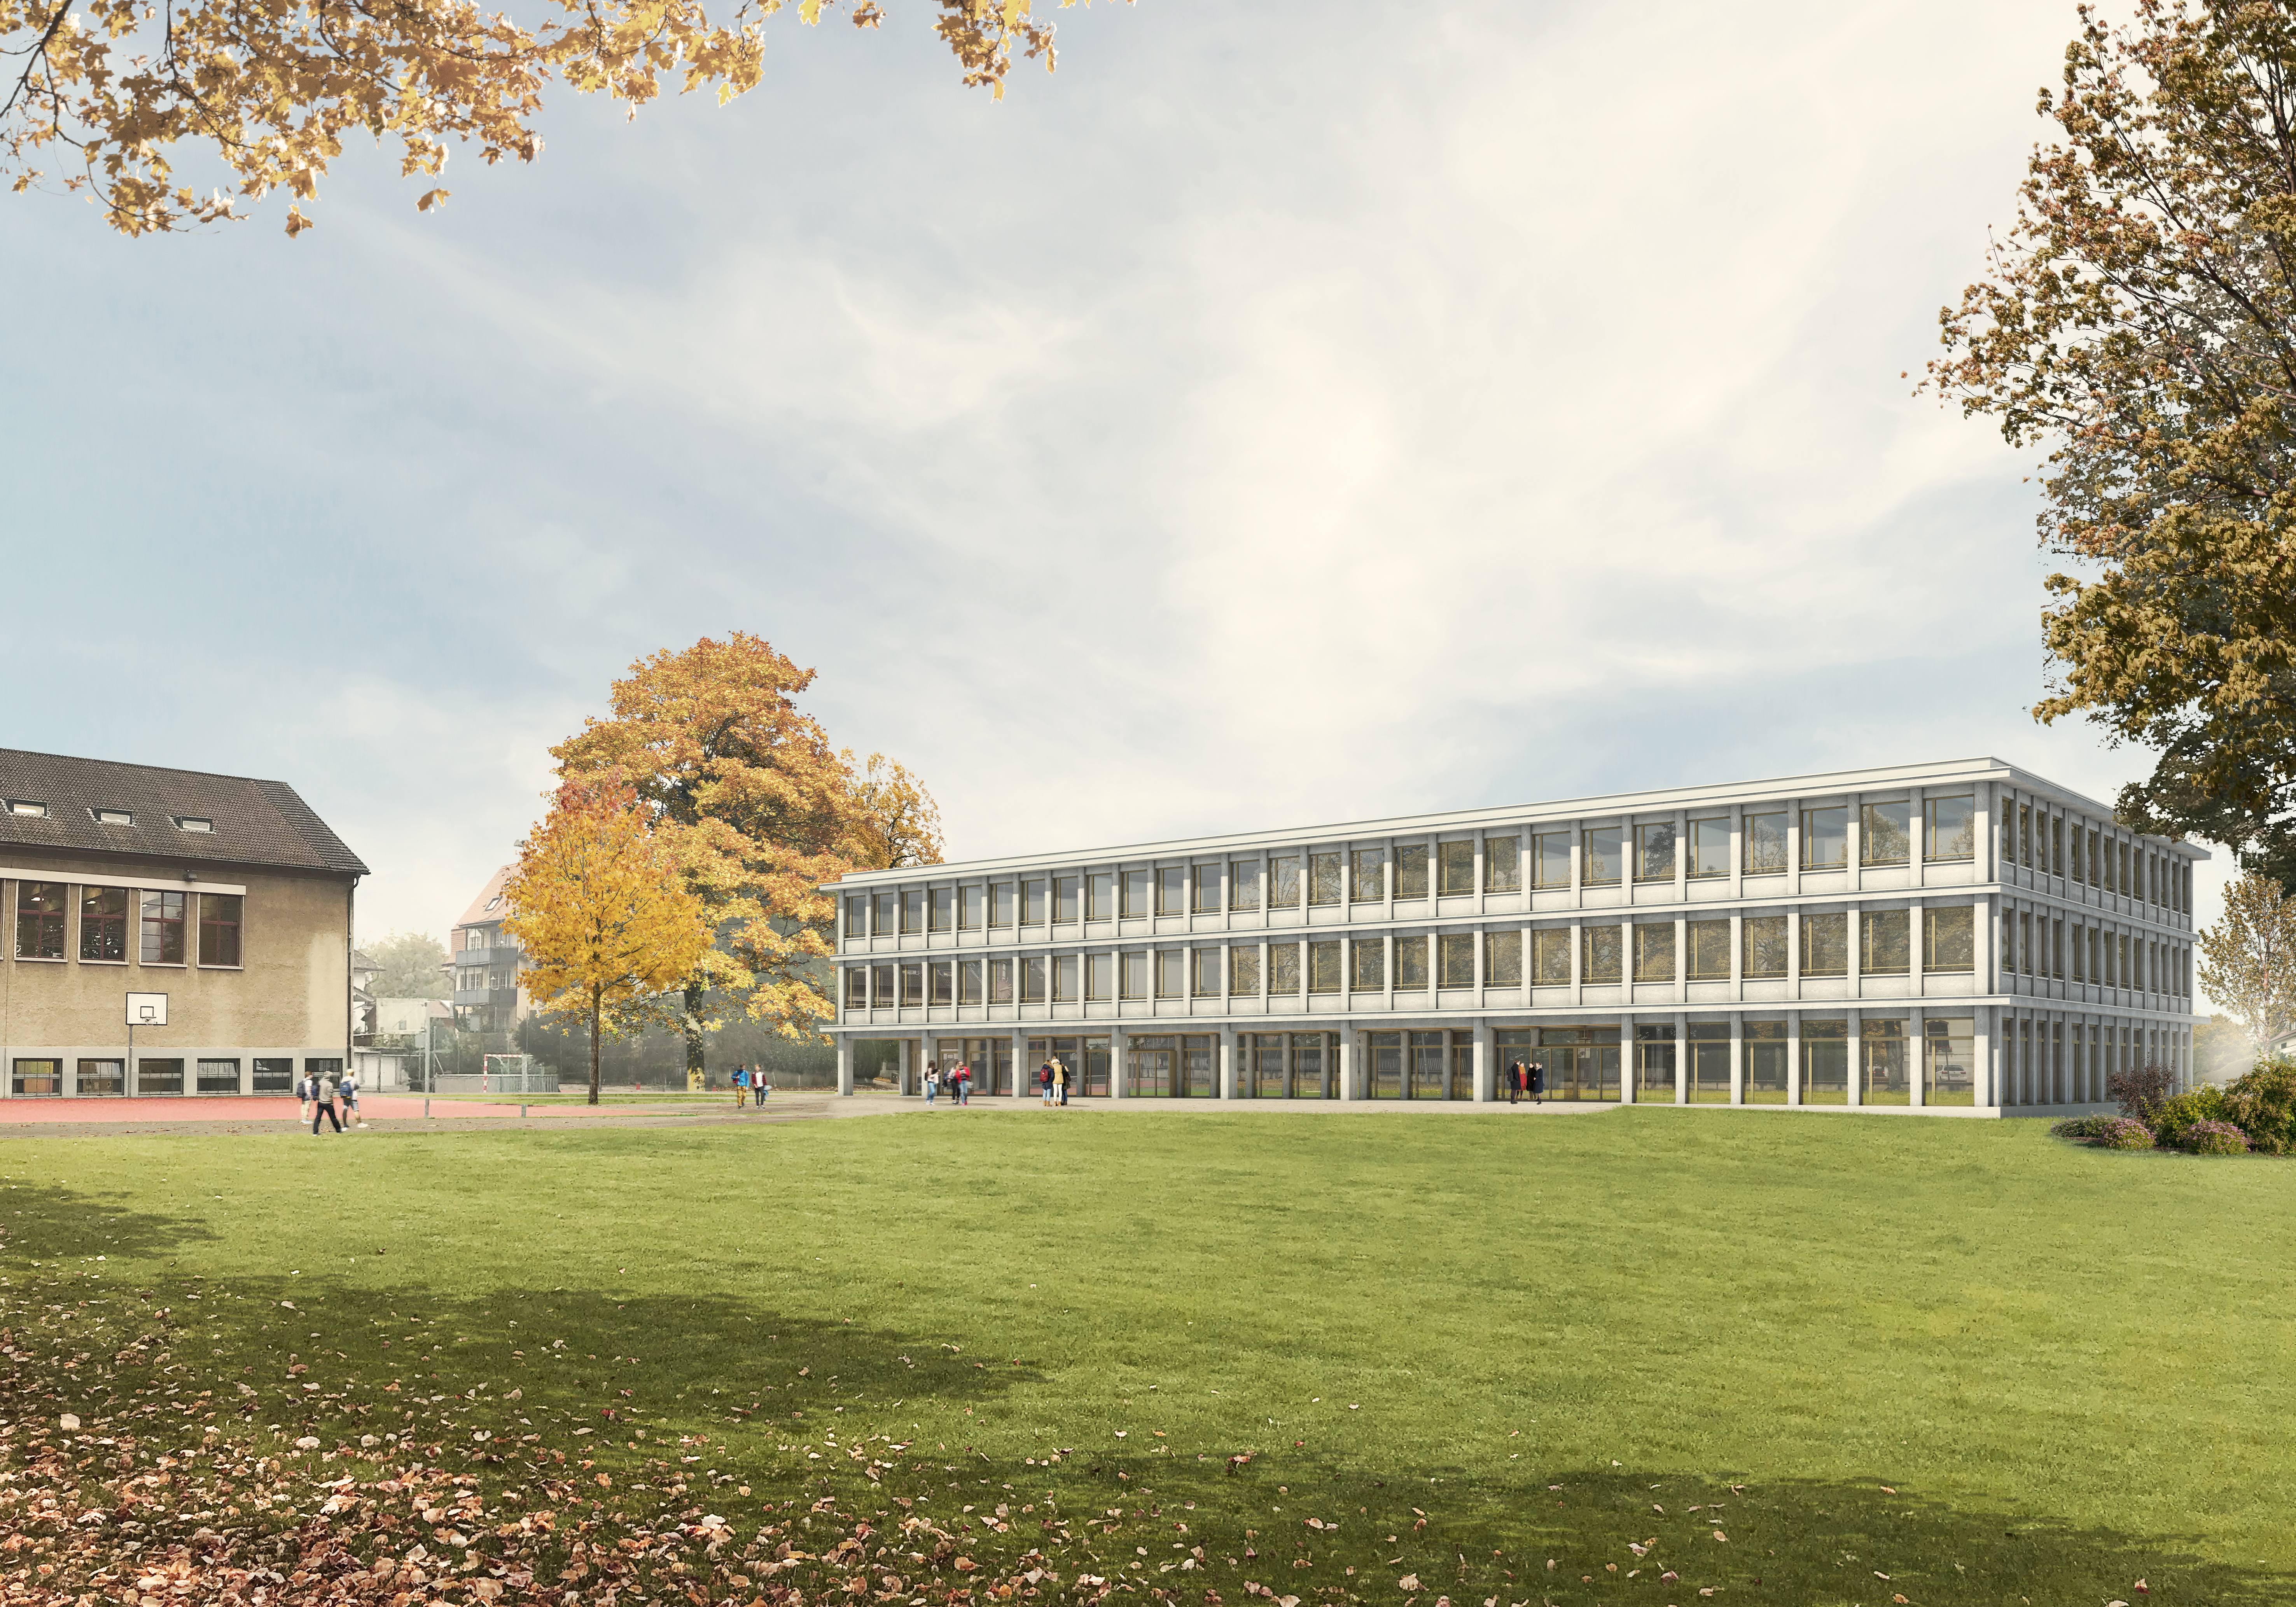 Projet lauréat « Phönix » pour l’agrandissement du gymnase de Berthoud (visualisation : KNTXT Architekten GmbH)